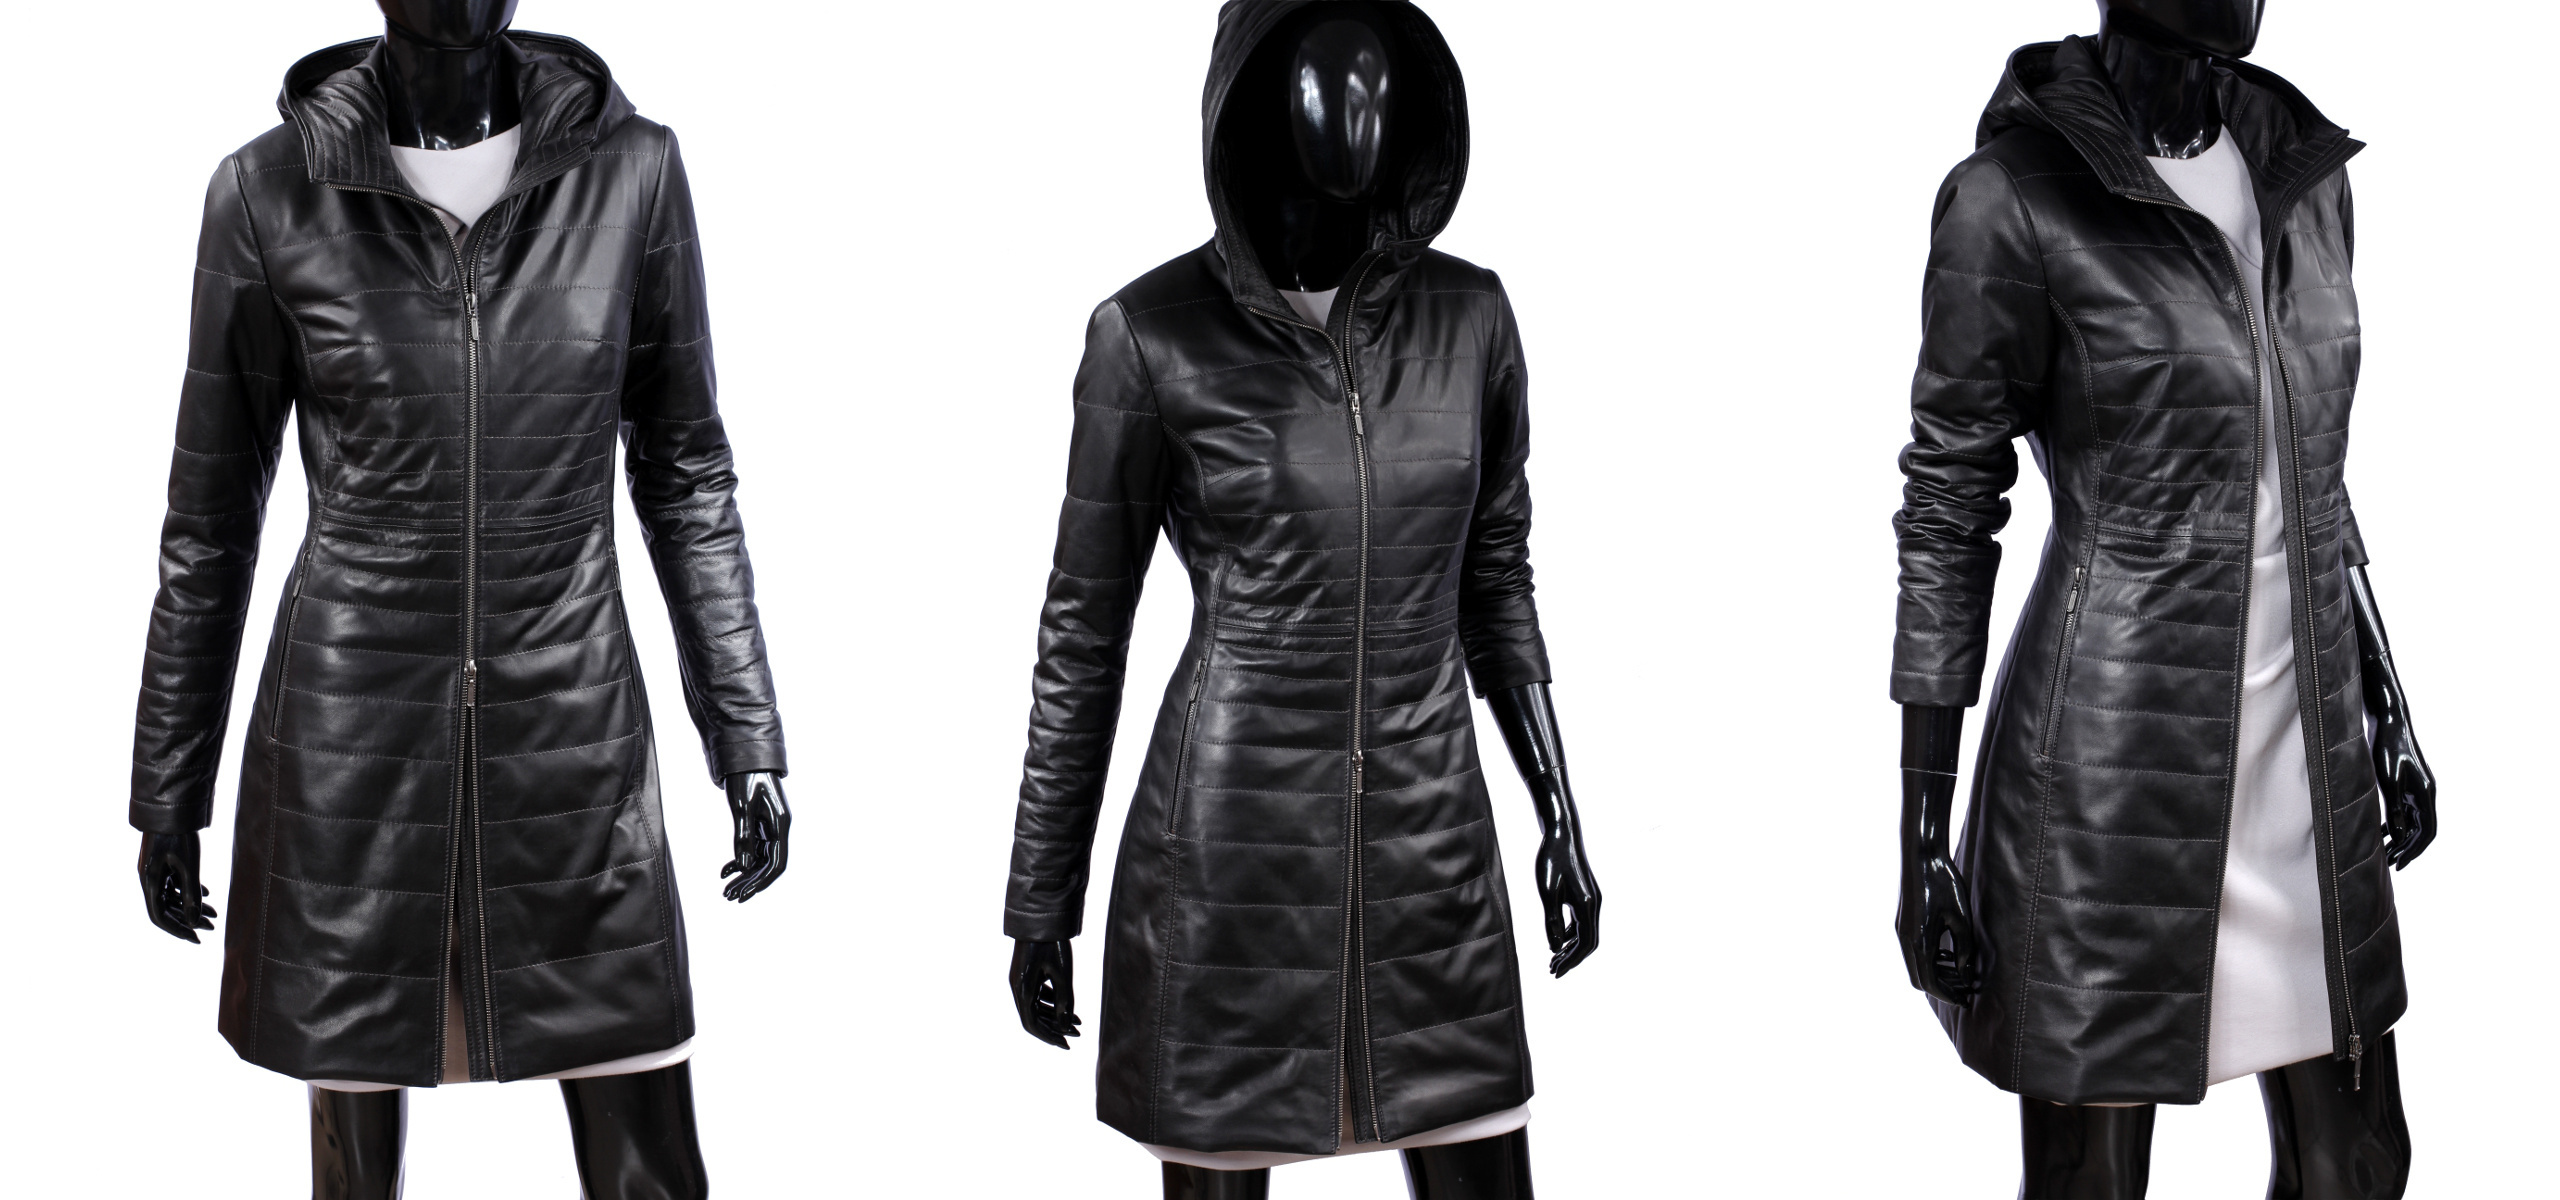 Dámsky kožený kabát Zimný DORJAN ANG450_4 XL Dominujúci vzor bez vzoru